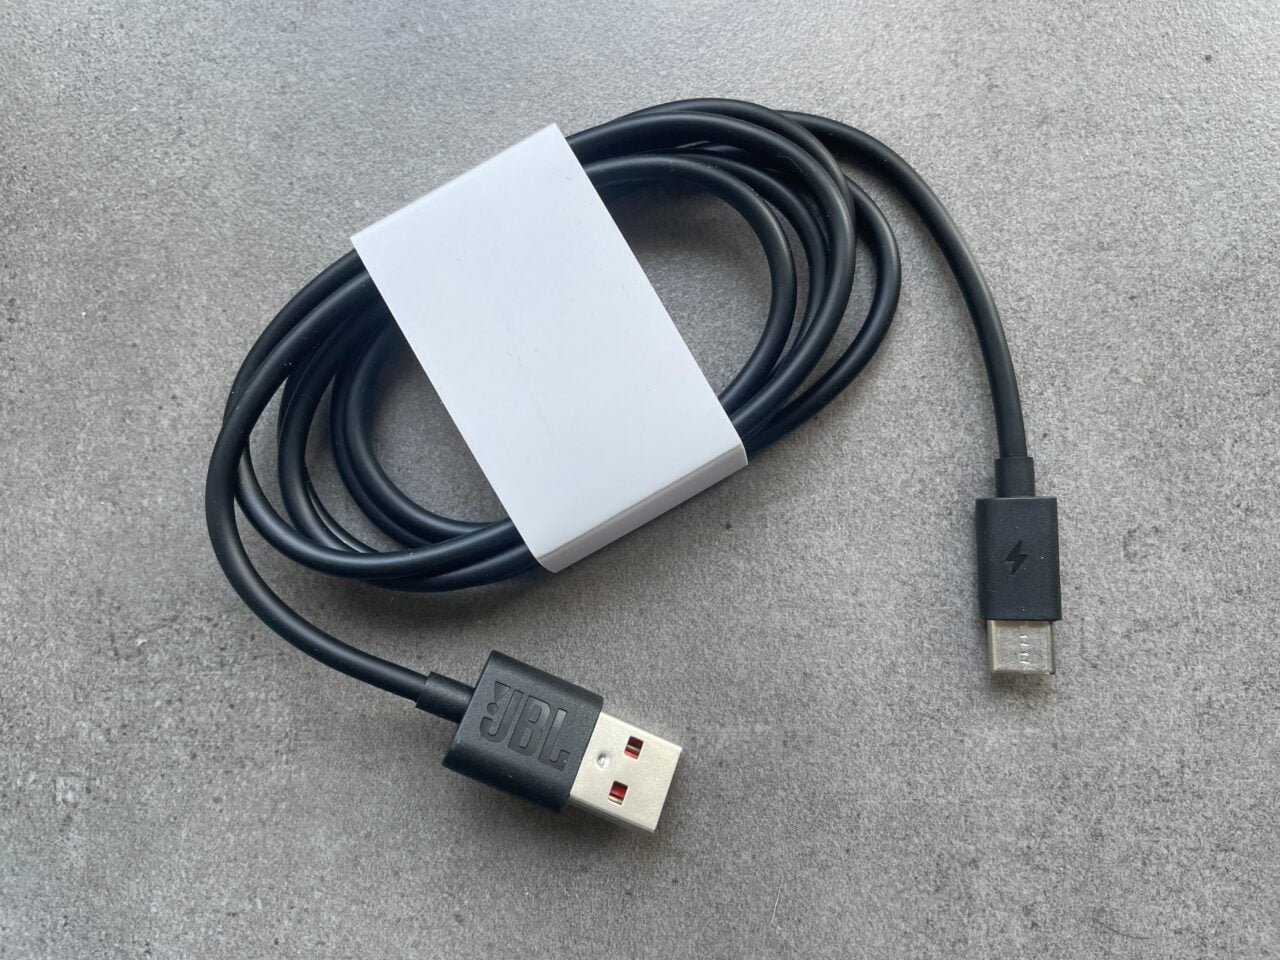 Czarny kabel USB z białą ładowarką na szarym tle.